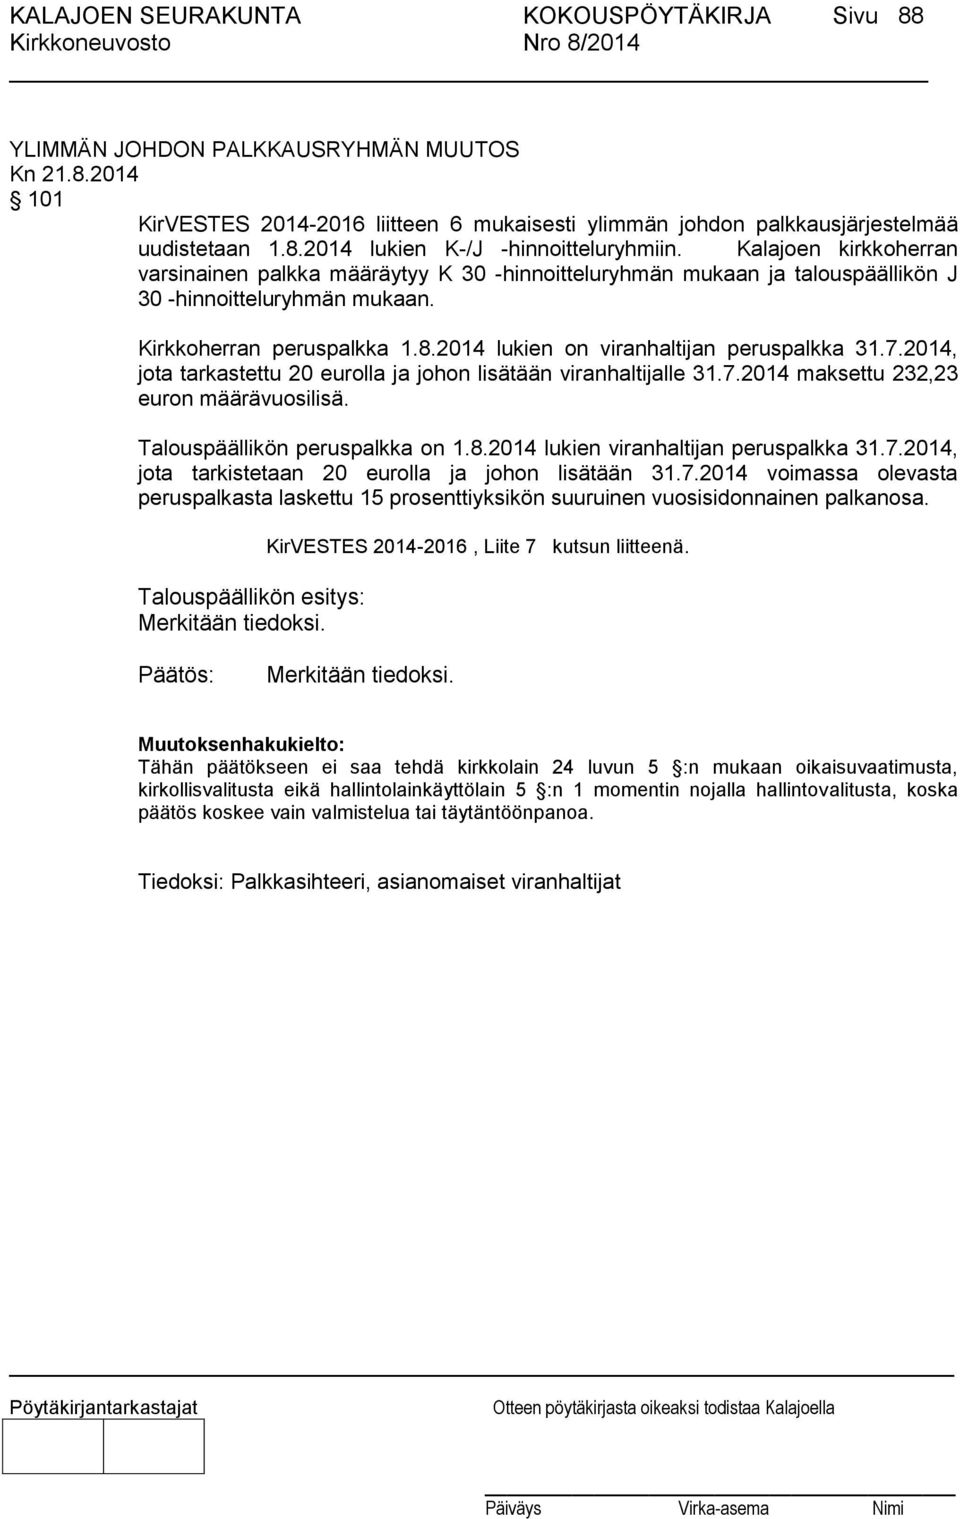 2014 lukien on viranhaltijan peruspalkka 31.7.2014, jota tarkastettu 20 eurolla ja johon lisätään viranhaltijalle 31.7.2014 maksettu 232,23 euron määrävuosilisä. Talouspäällikön peruspalkka on 1.8.